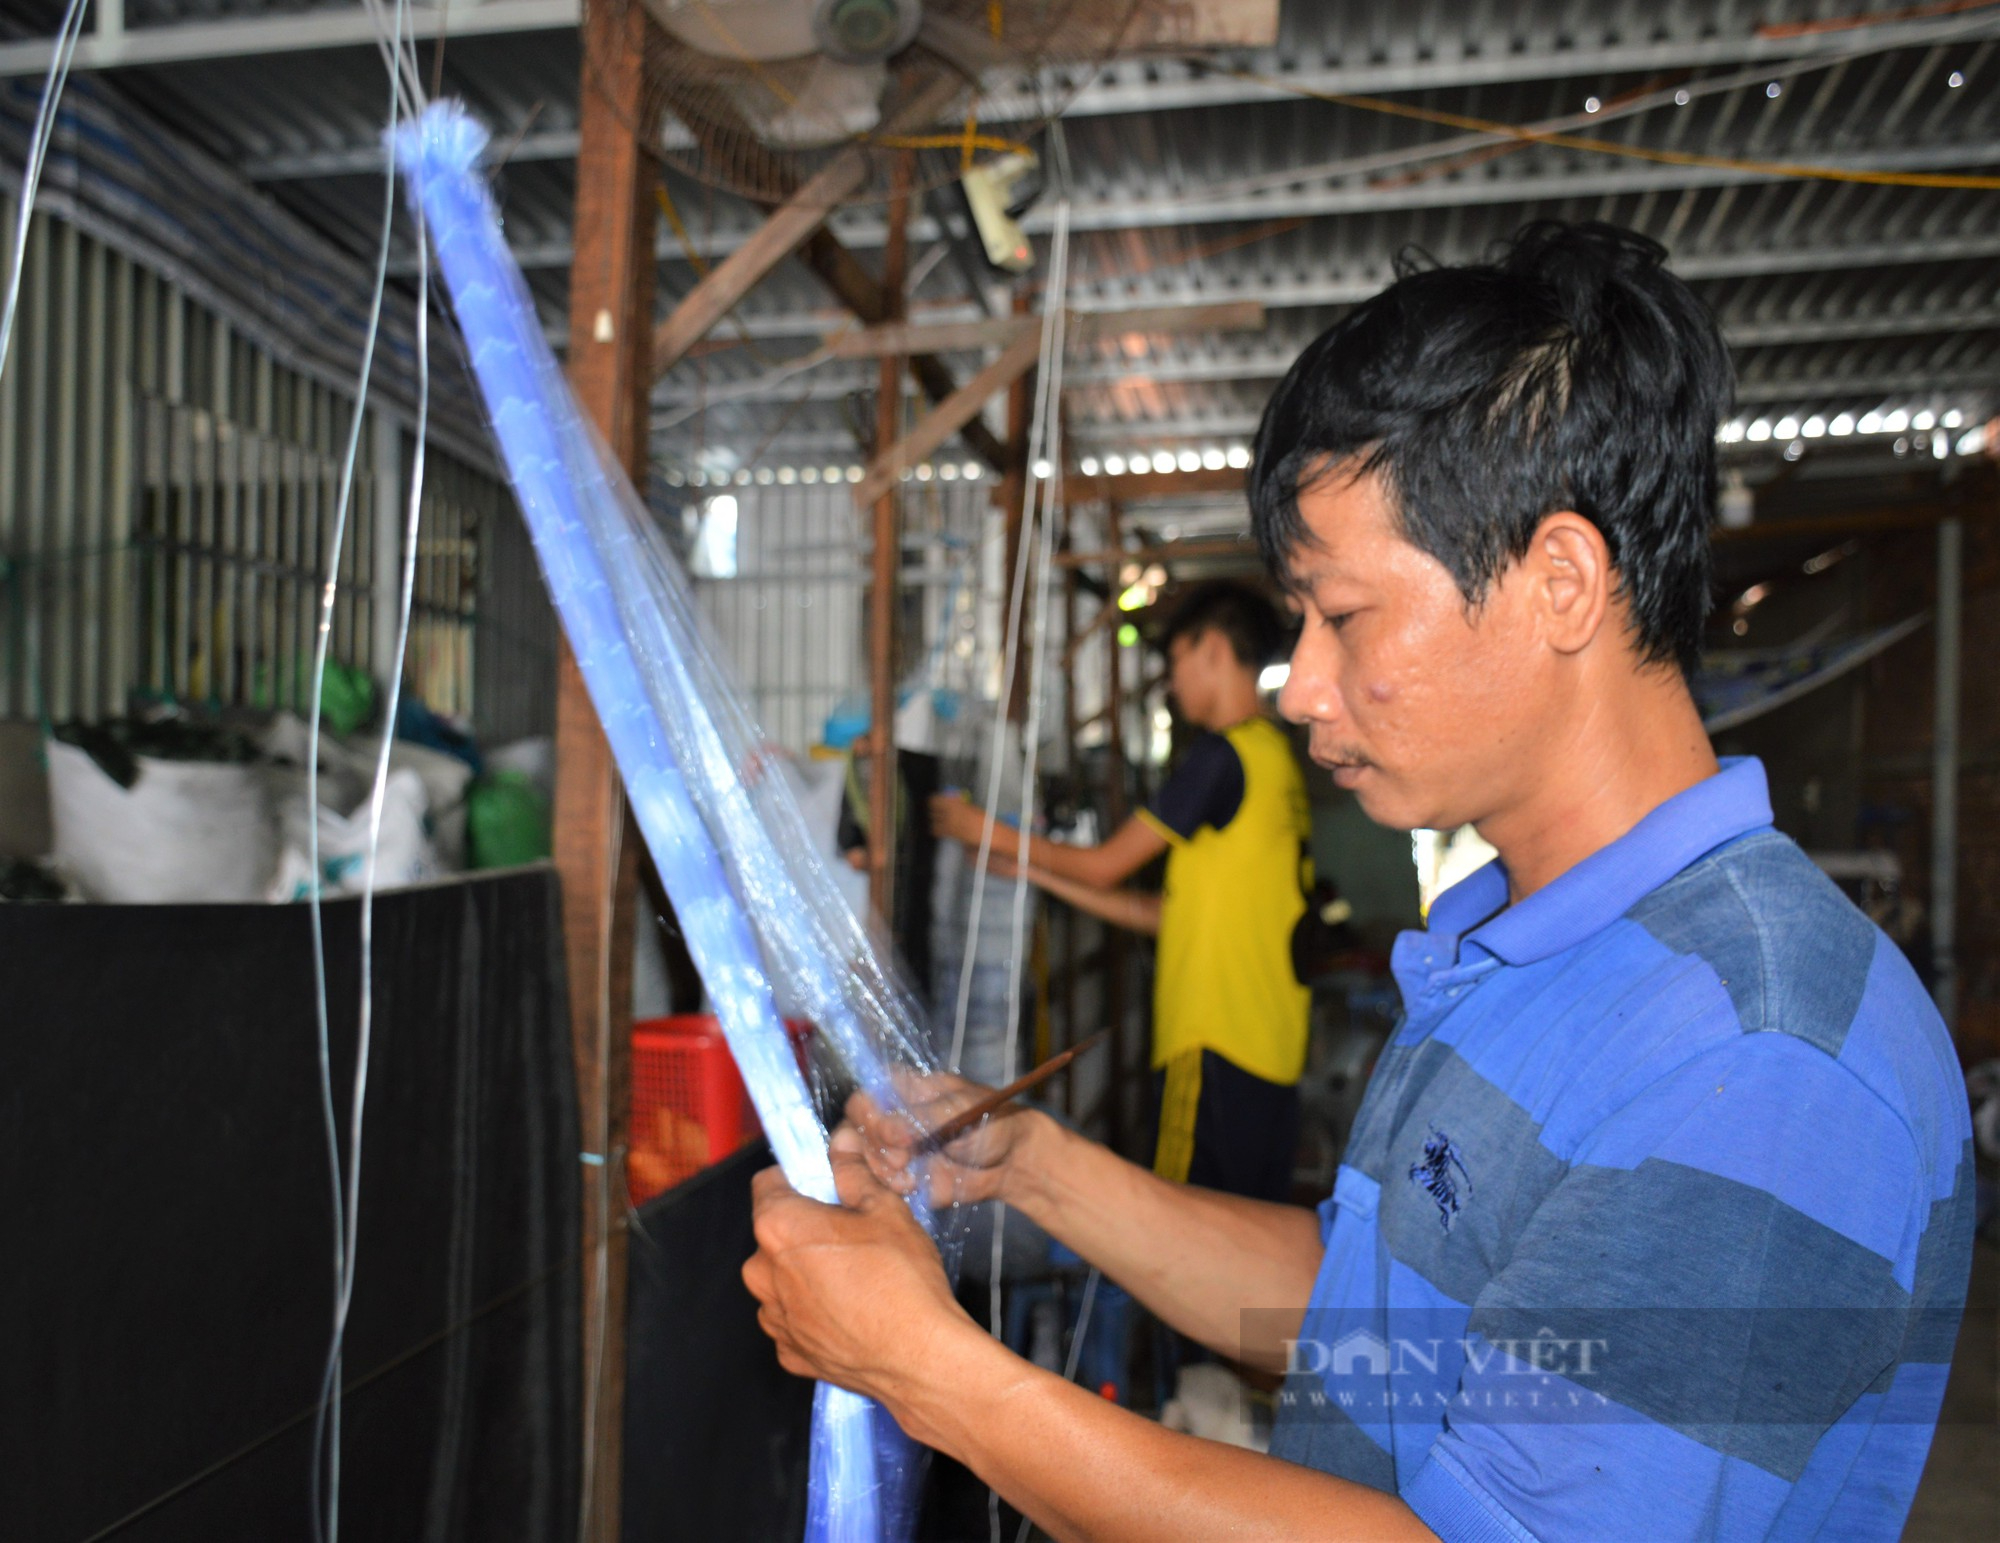 Làng ráp lú nổi tiếng ở Cà Mau giải quyết việc làm cho hàng trăm lao động - Ảnh 6.